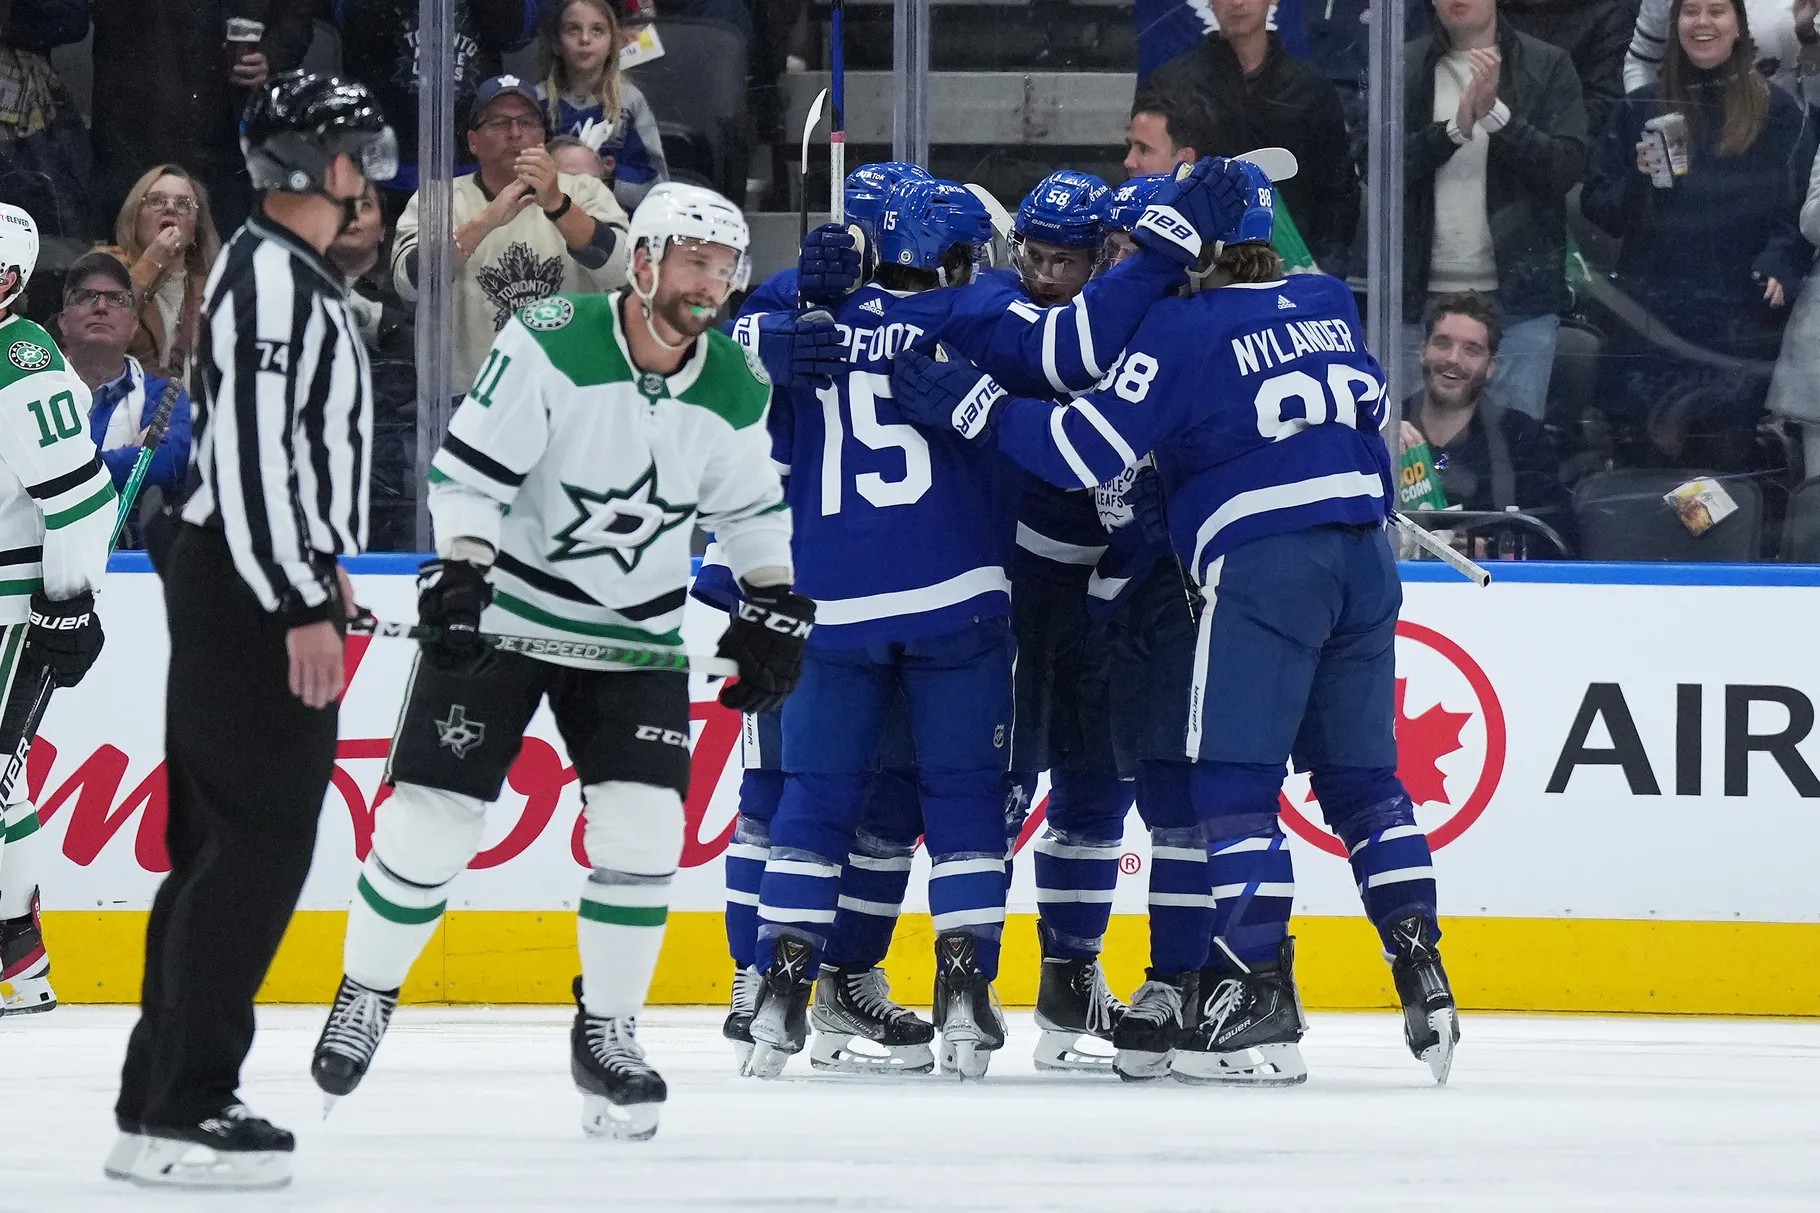 Toronto Maple Leafs celebrate a victory over the Dallas Stars